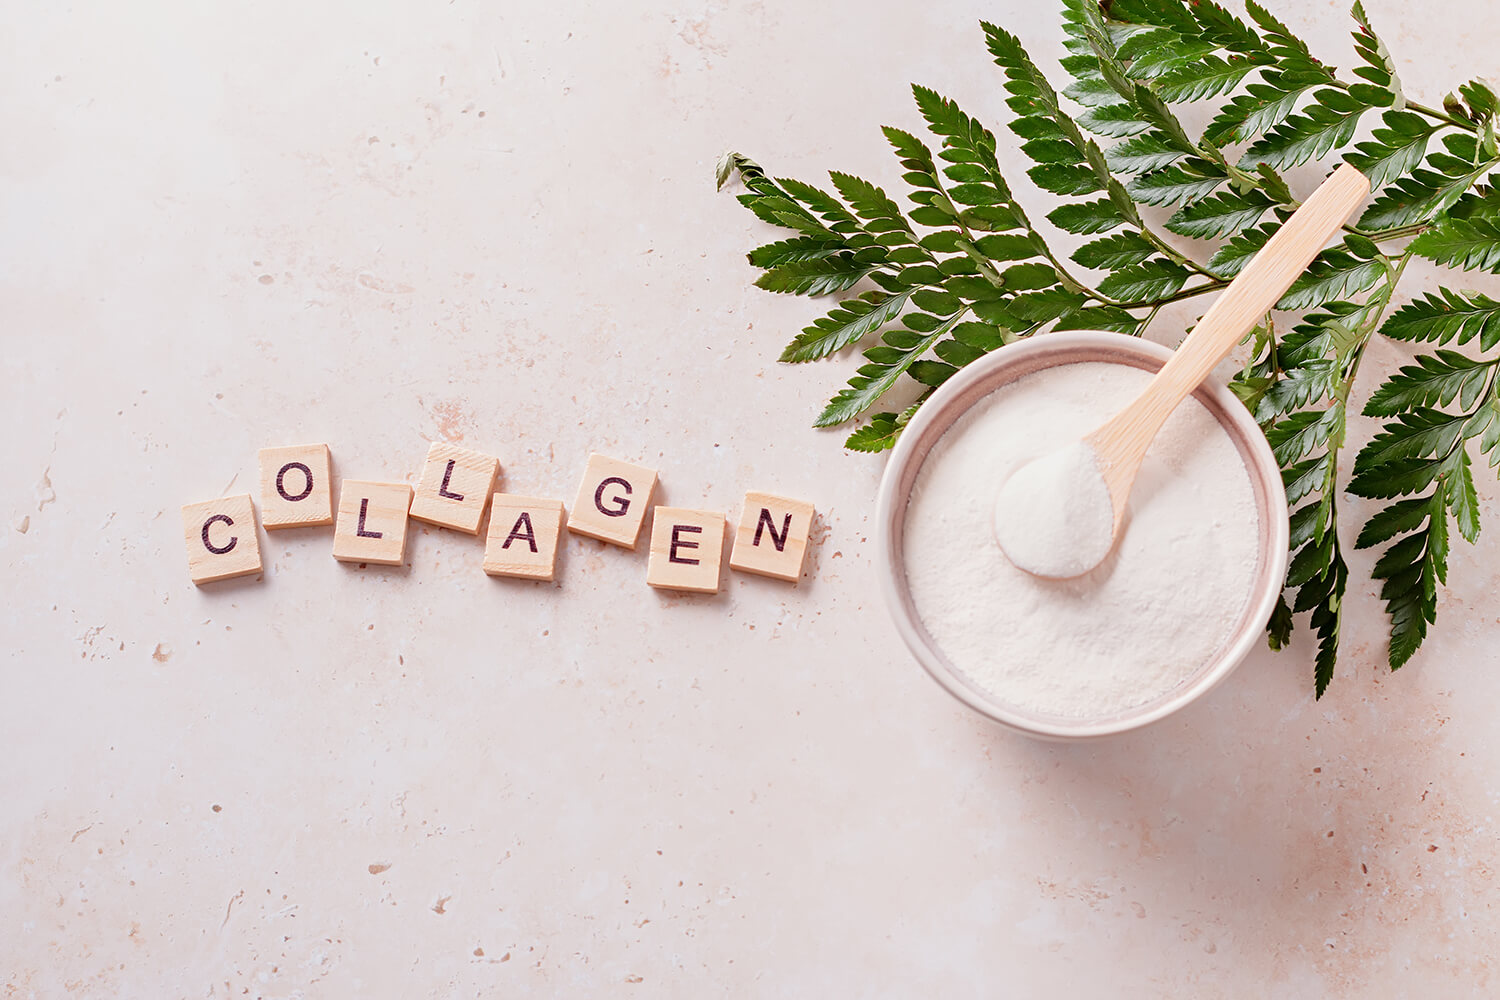 Top 11 Benefits of Taking Collagen Supplements